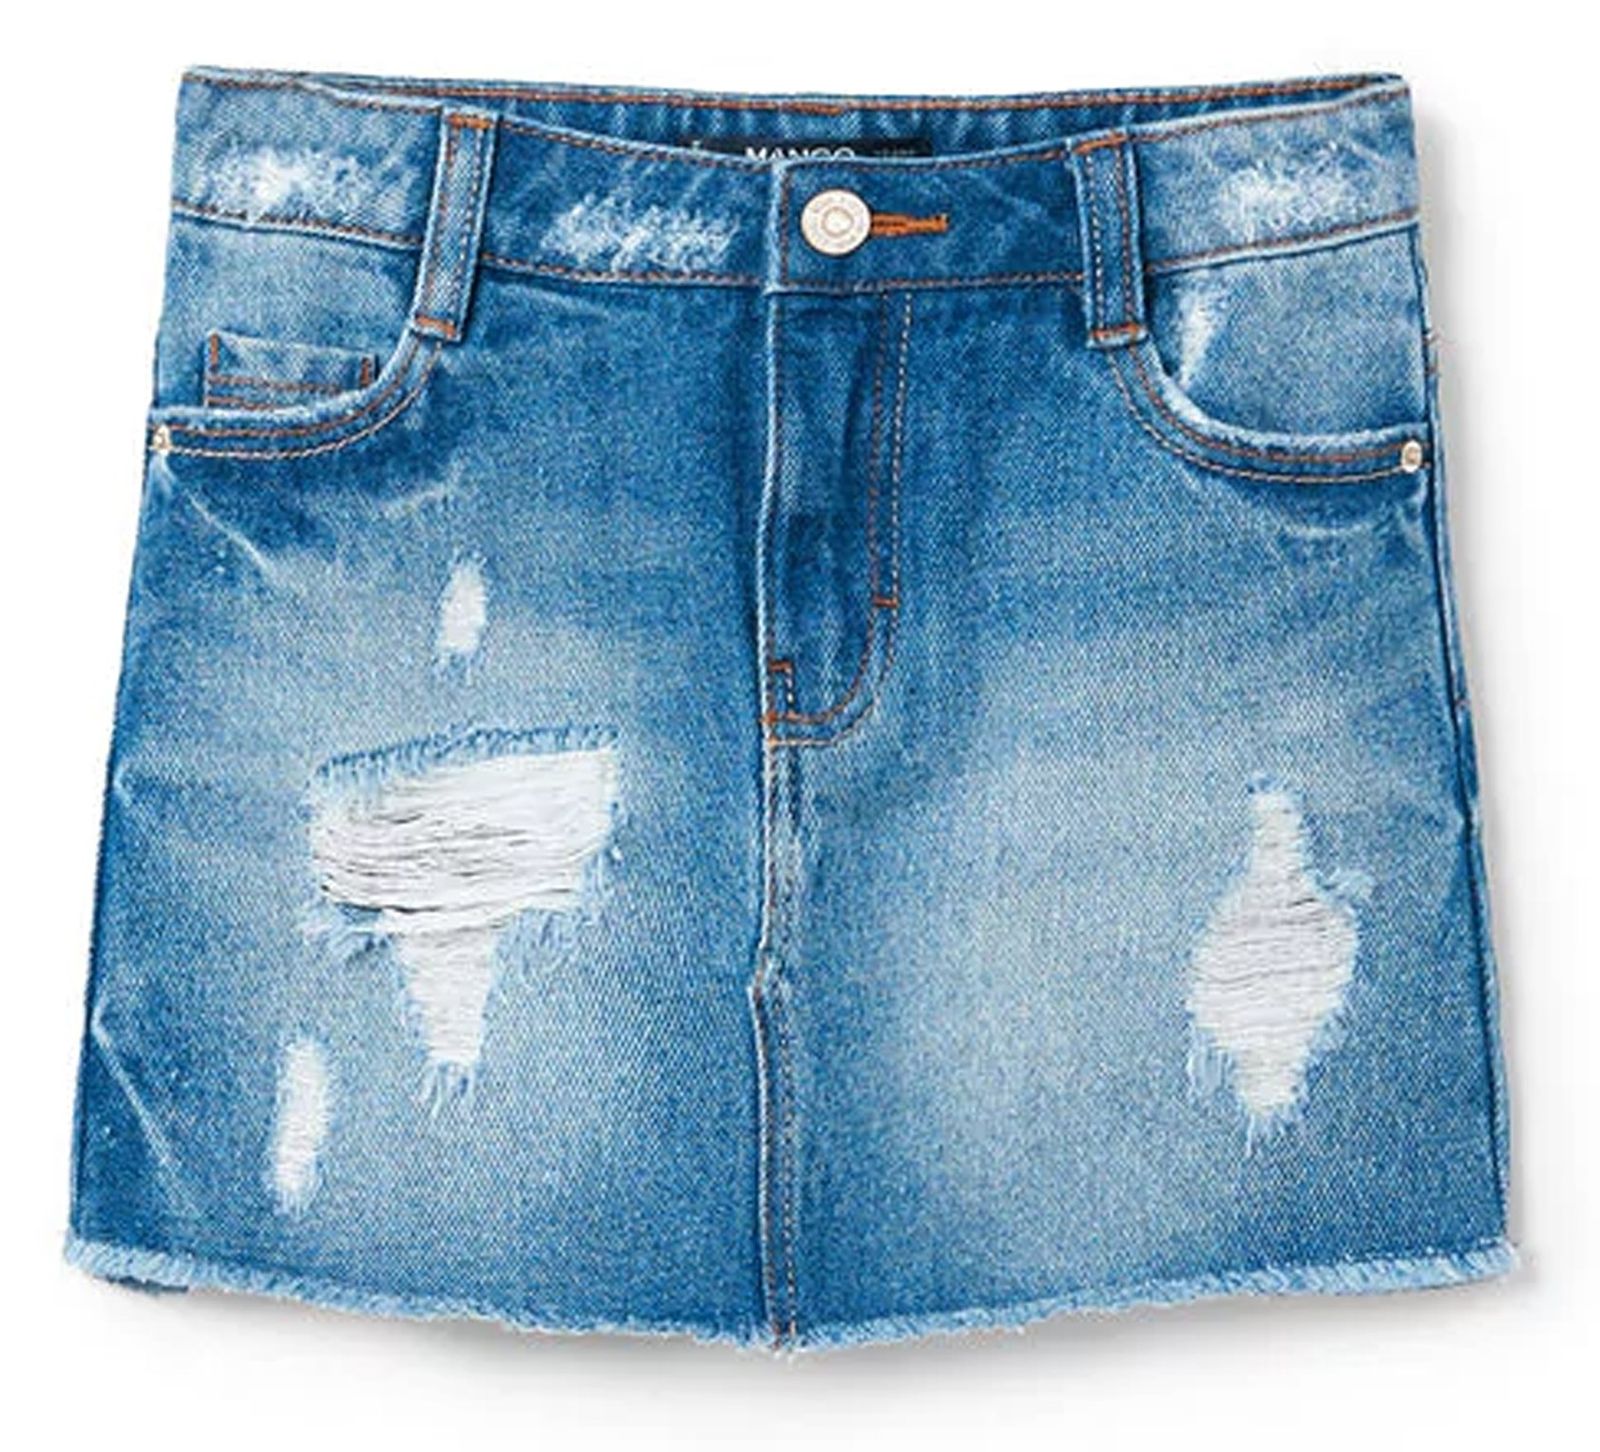 دامن جین کوتاه دخترانه - مانگو - آبي - 1